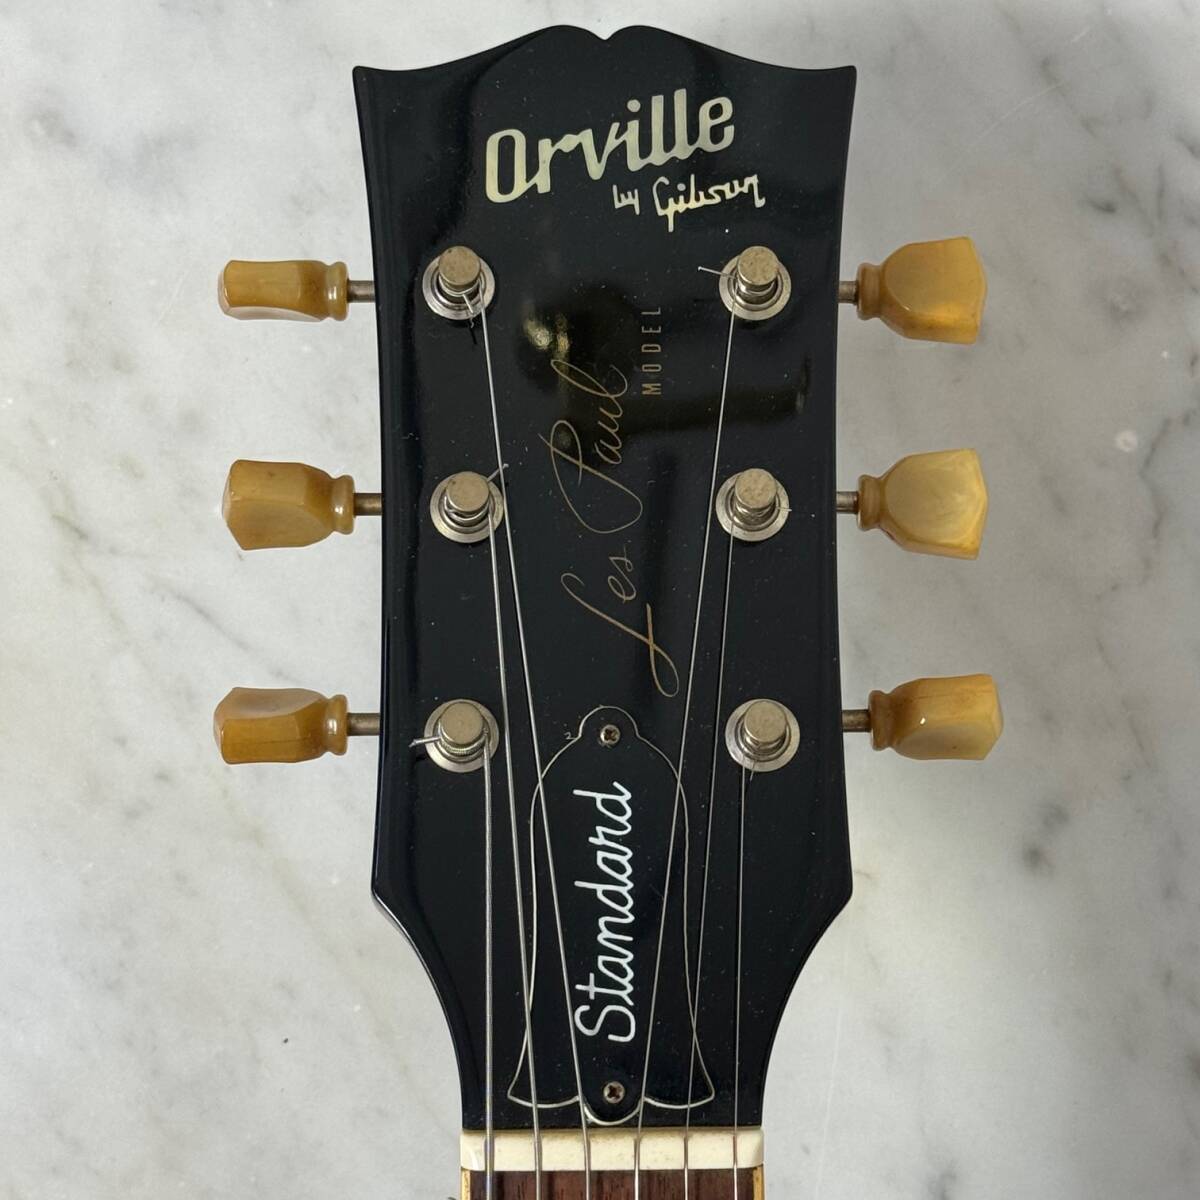 上位モデル 無垢 Orville by Gibson Les Paul Standard 1992年 ディープジョイント Gibson 刻印 PAF オービル by ギブソン_画像3